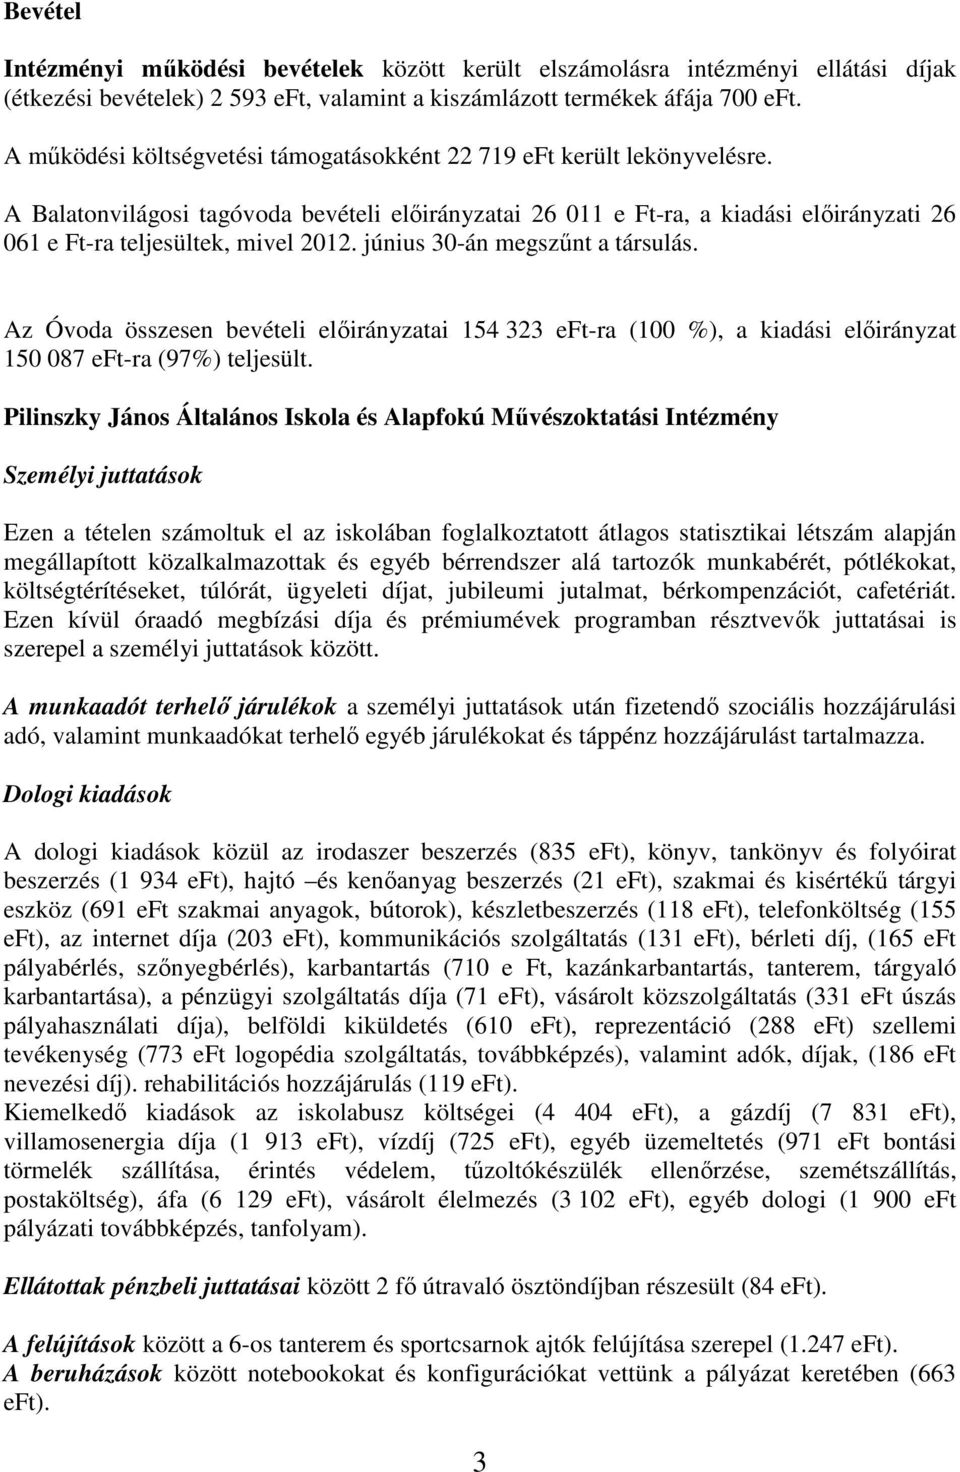 A Balatonvilágosi tagóvoda bevételi előirányzatai 26 011 e Ft-ra, a kiadási előirányzati 26 061 e Ft-ra teljesültek, mivel 2012. június 30-án megszűnt a társulás.